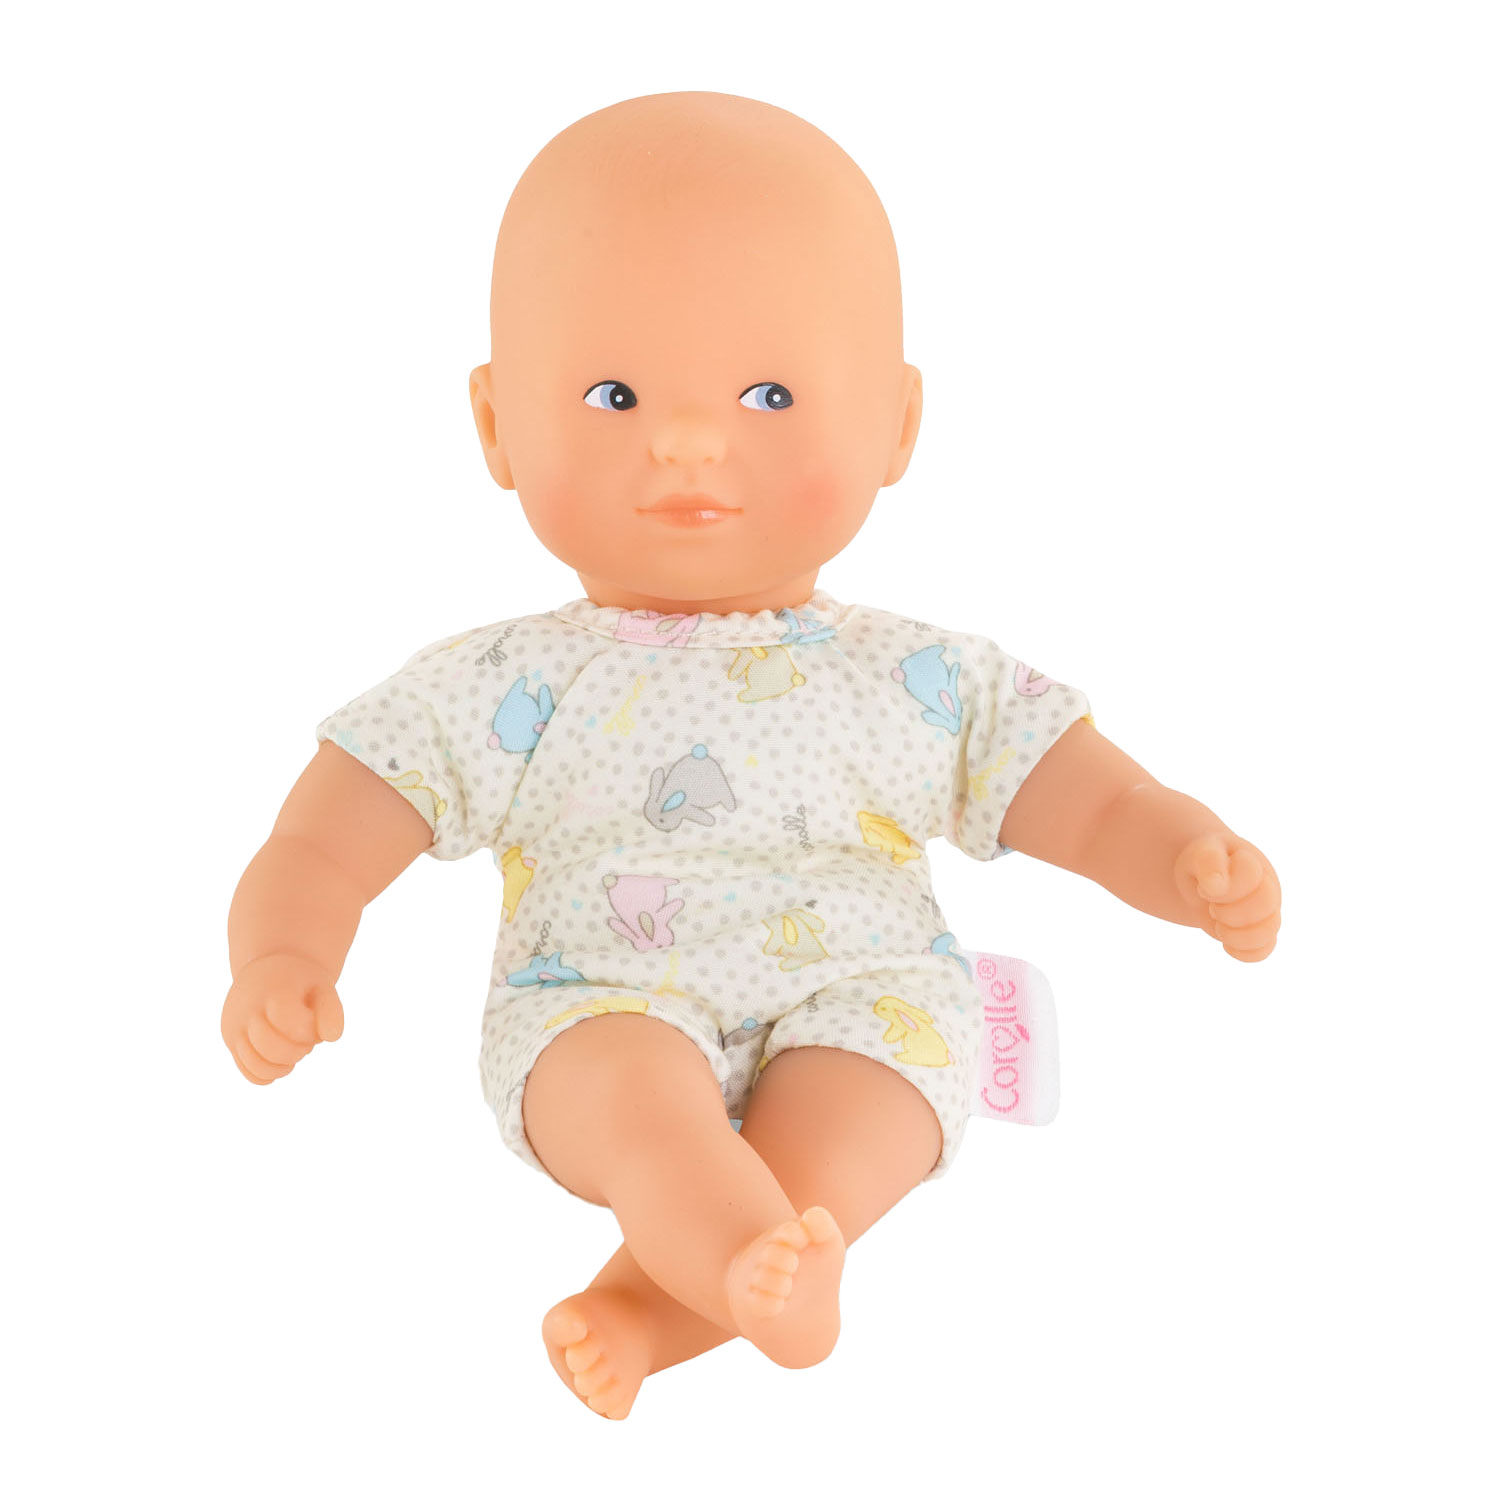 Corolle Mon Premier Poupon Mini Calin Baby Doll - Lapin Yeux Bleus, 20 cm